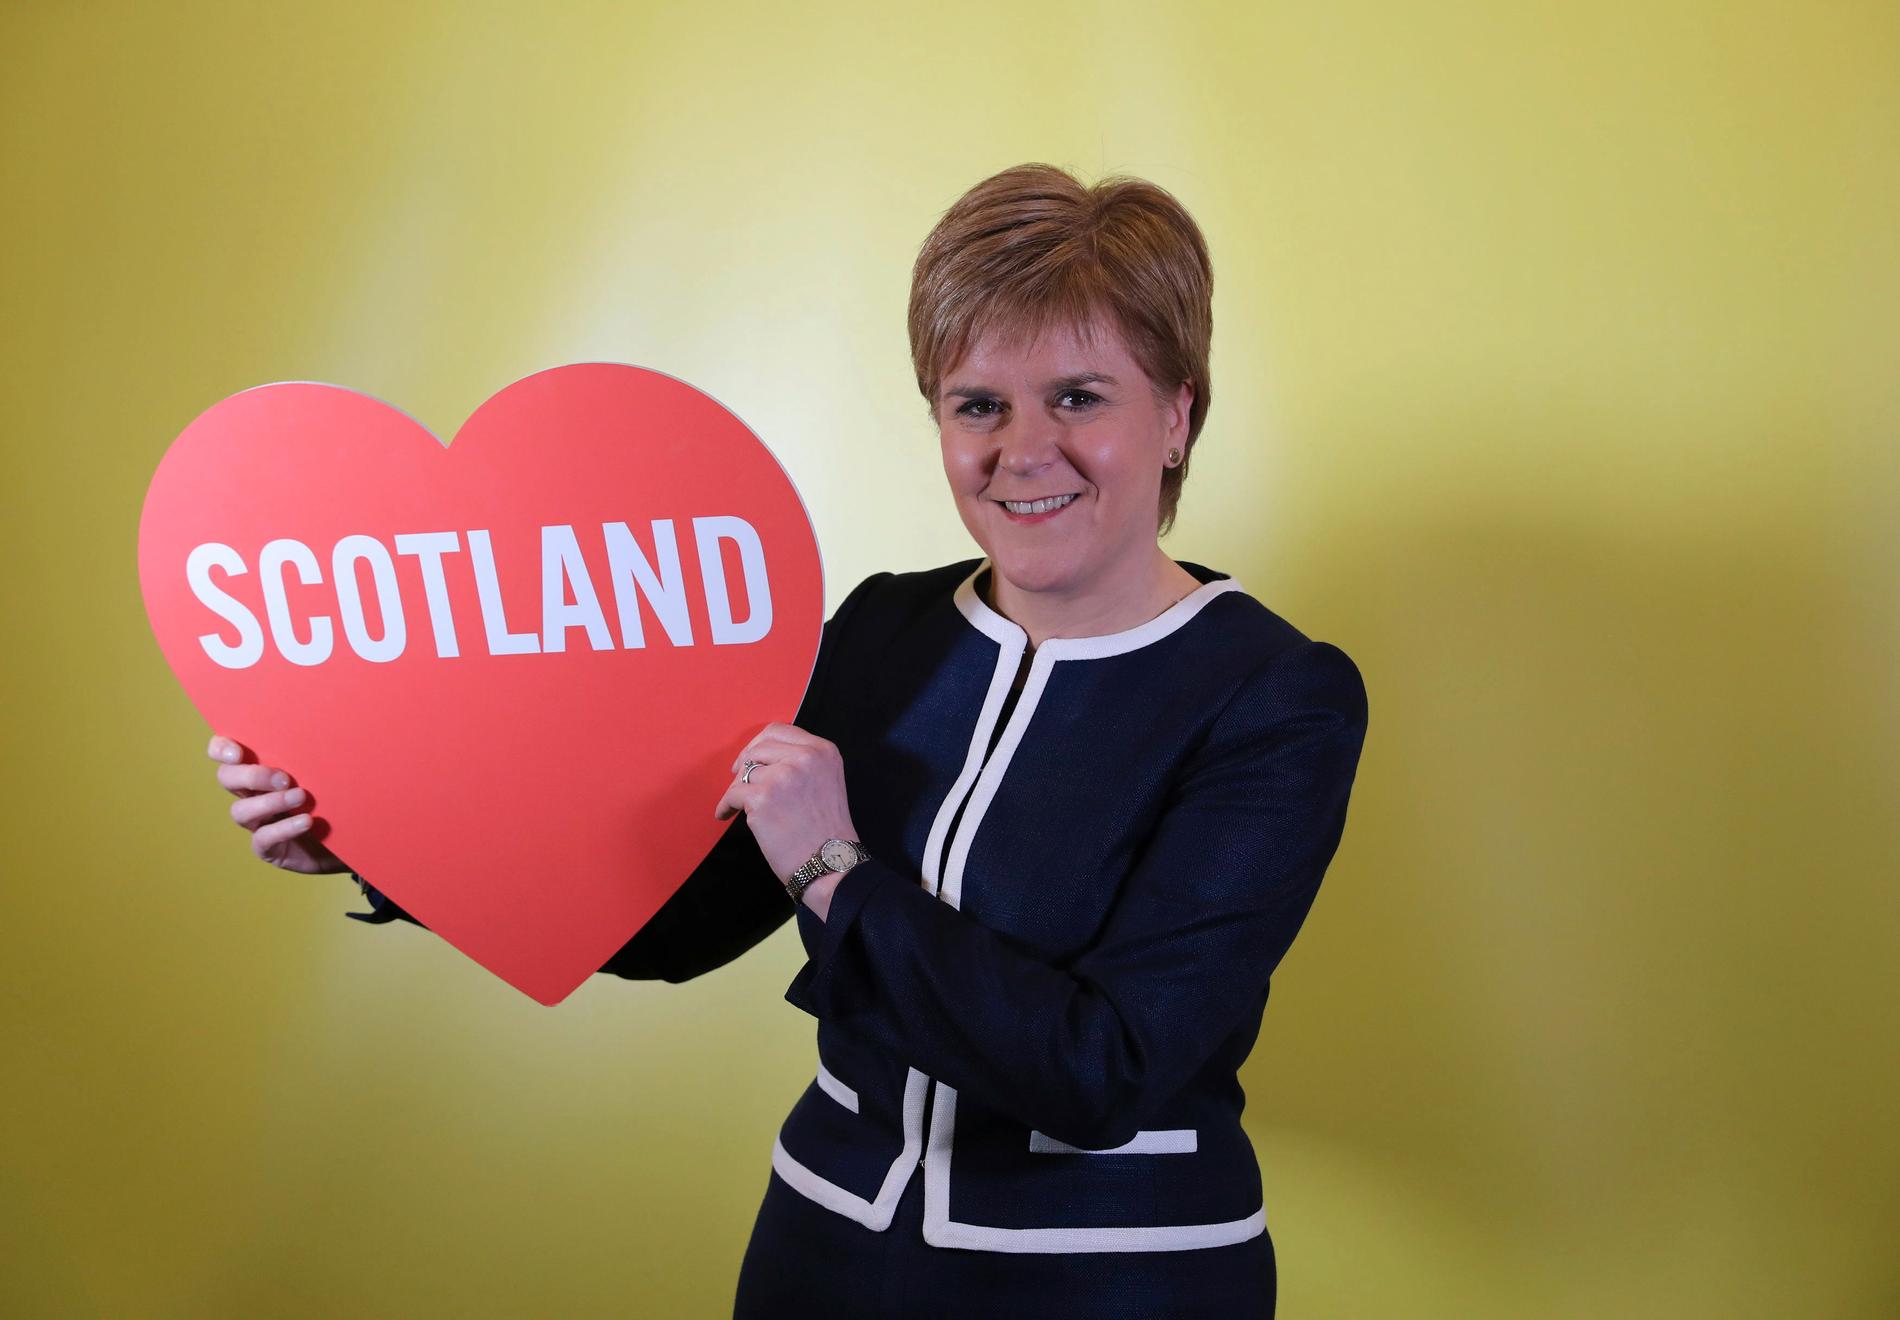 BER OM LOV: Skottlands førsteminister Nicola Sturgeon vil ha en ny folkeavstemning om skotsk uavhengighet nå når britene forlater EU. Her er Sturgeon avbildet tidligere i mars. Foto: Andrew Milligan/PA via AP/NTB scanpix